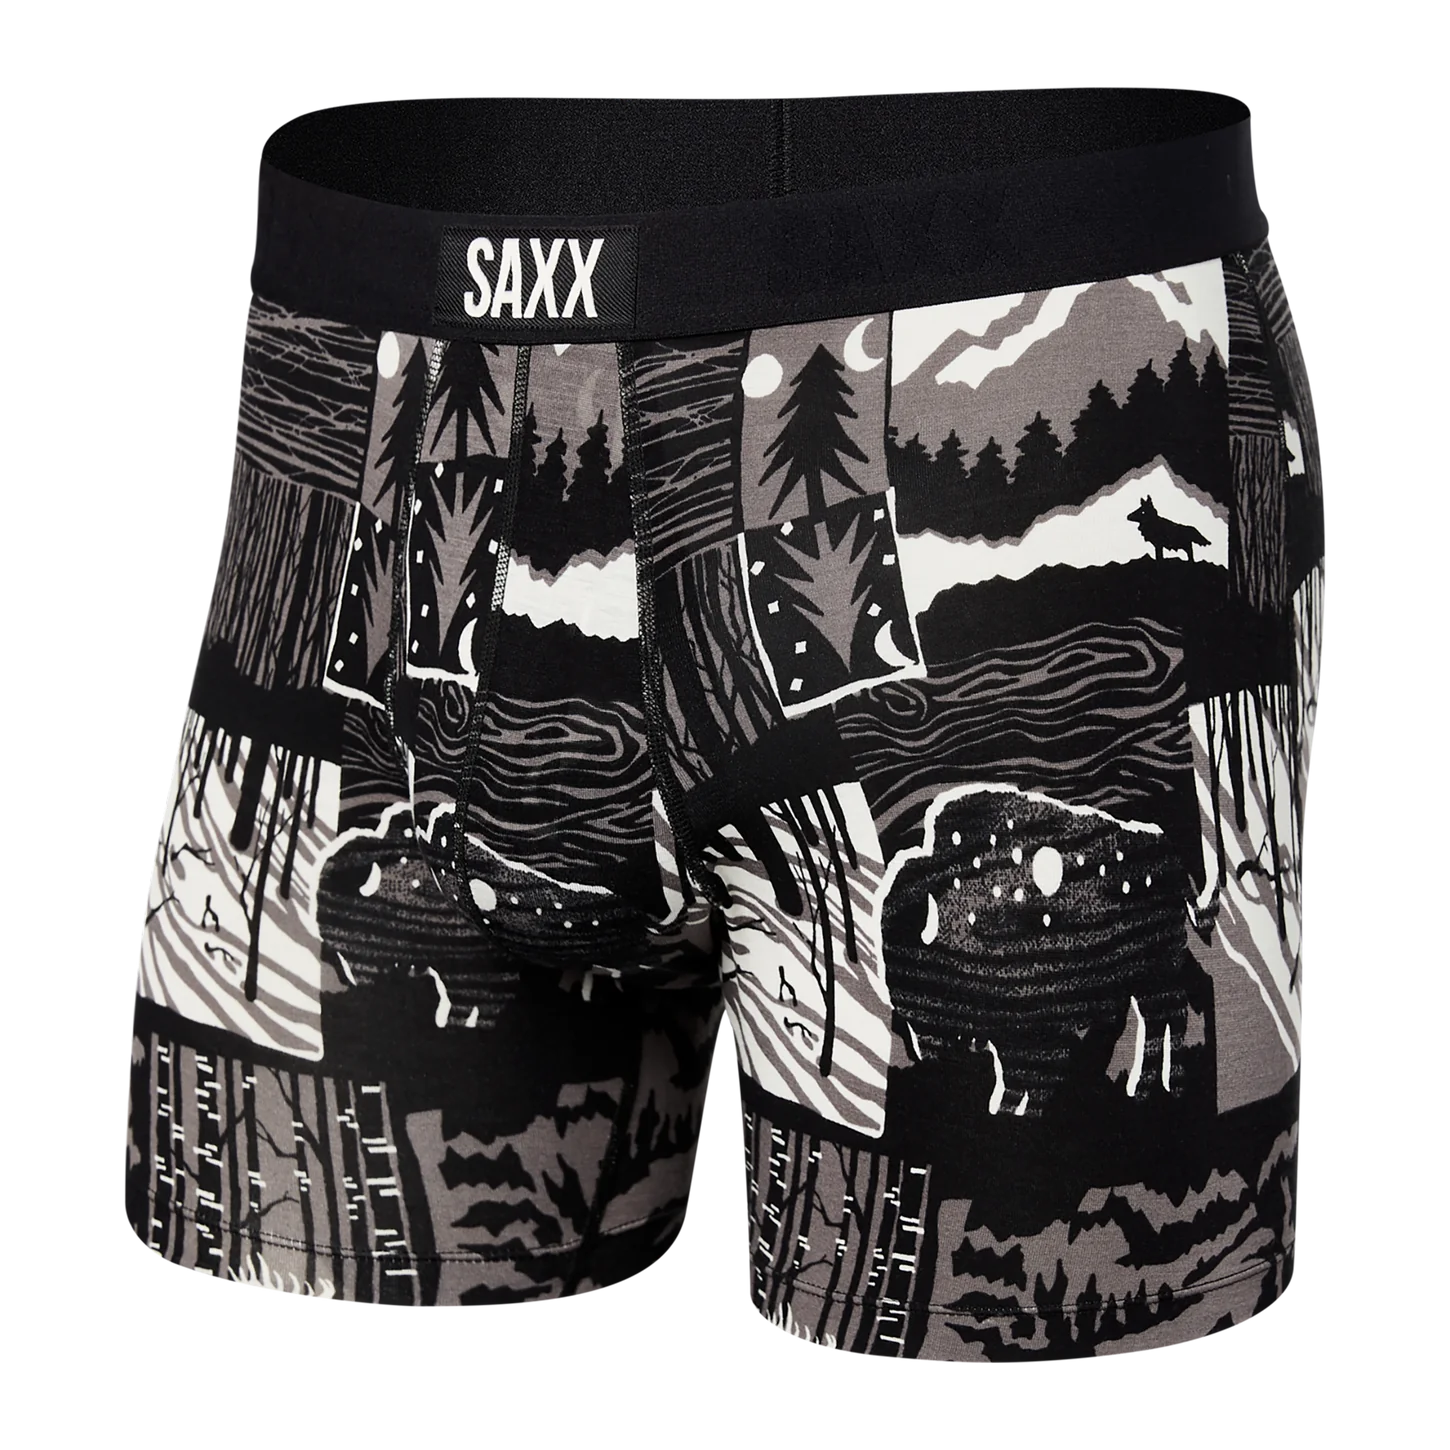 Vibe Boxer Briefs Underwear Saxx WSB S 